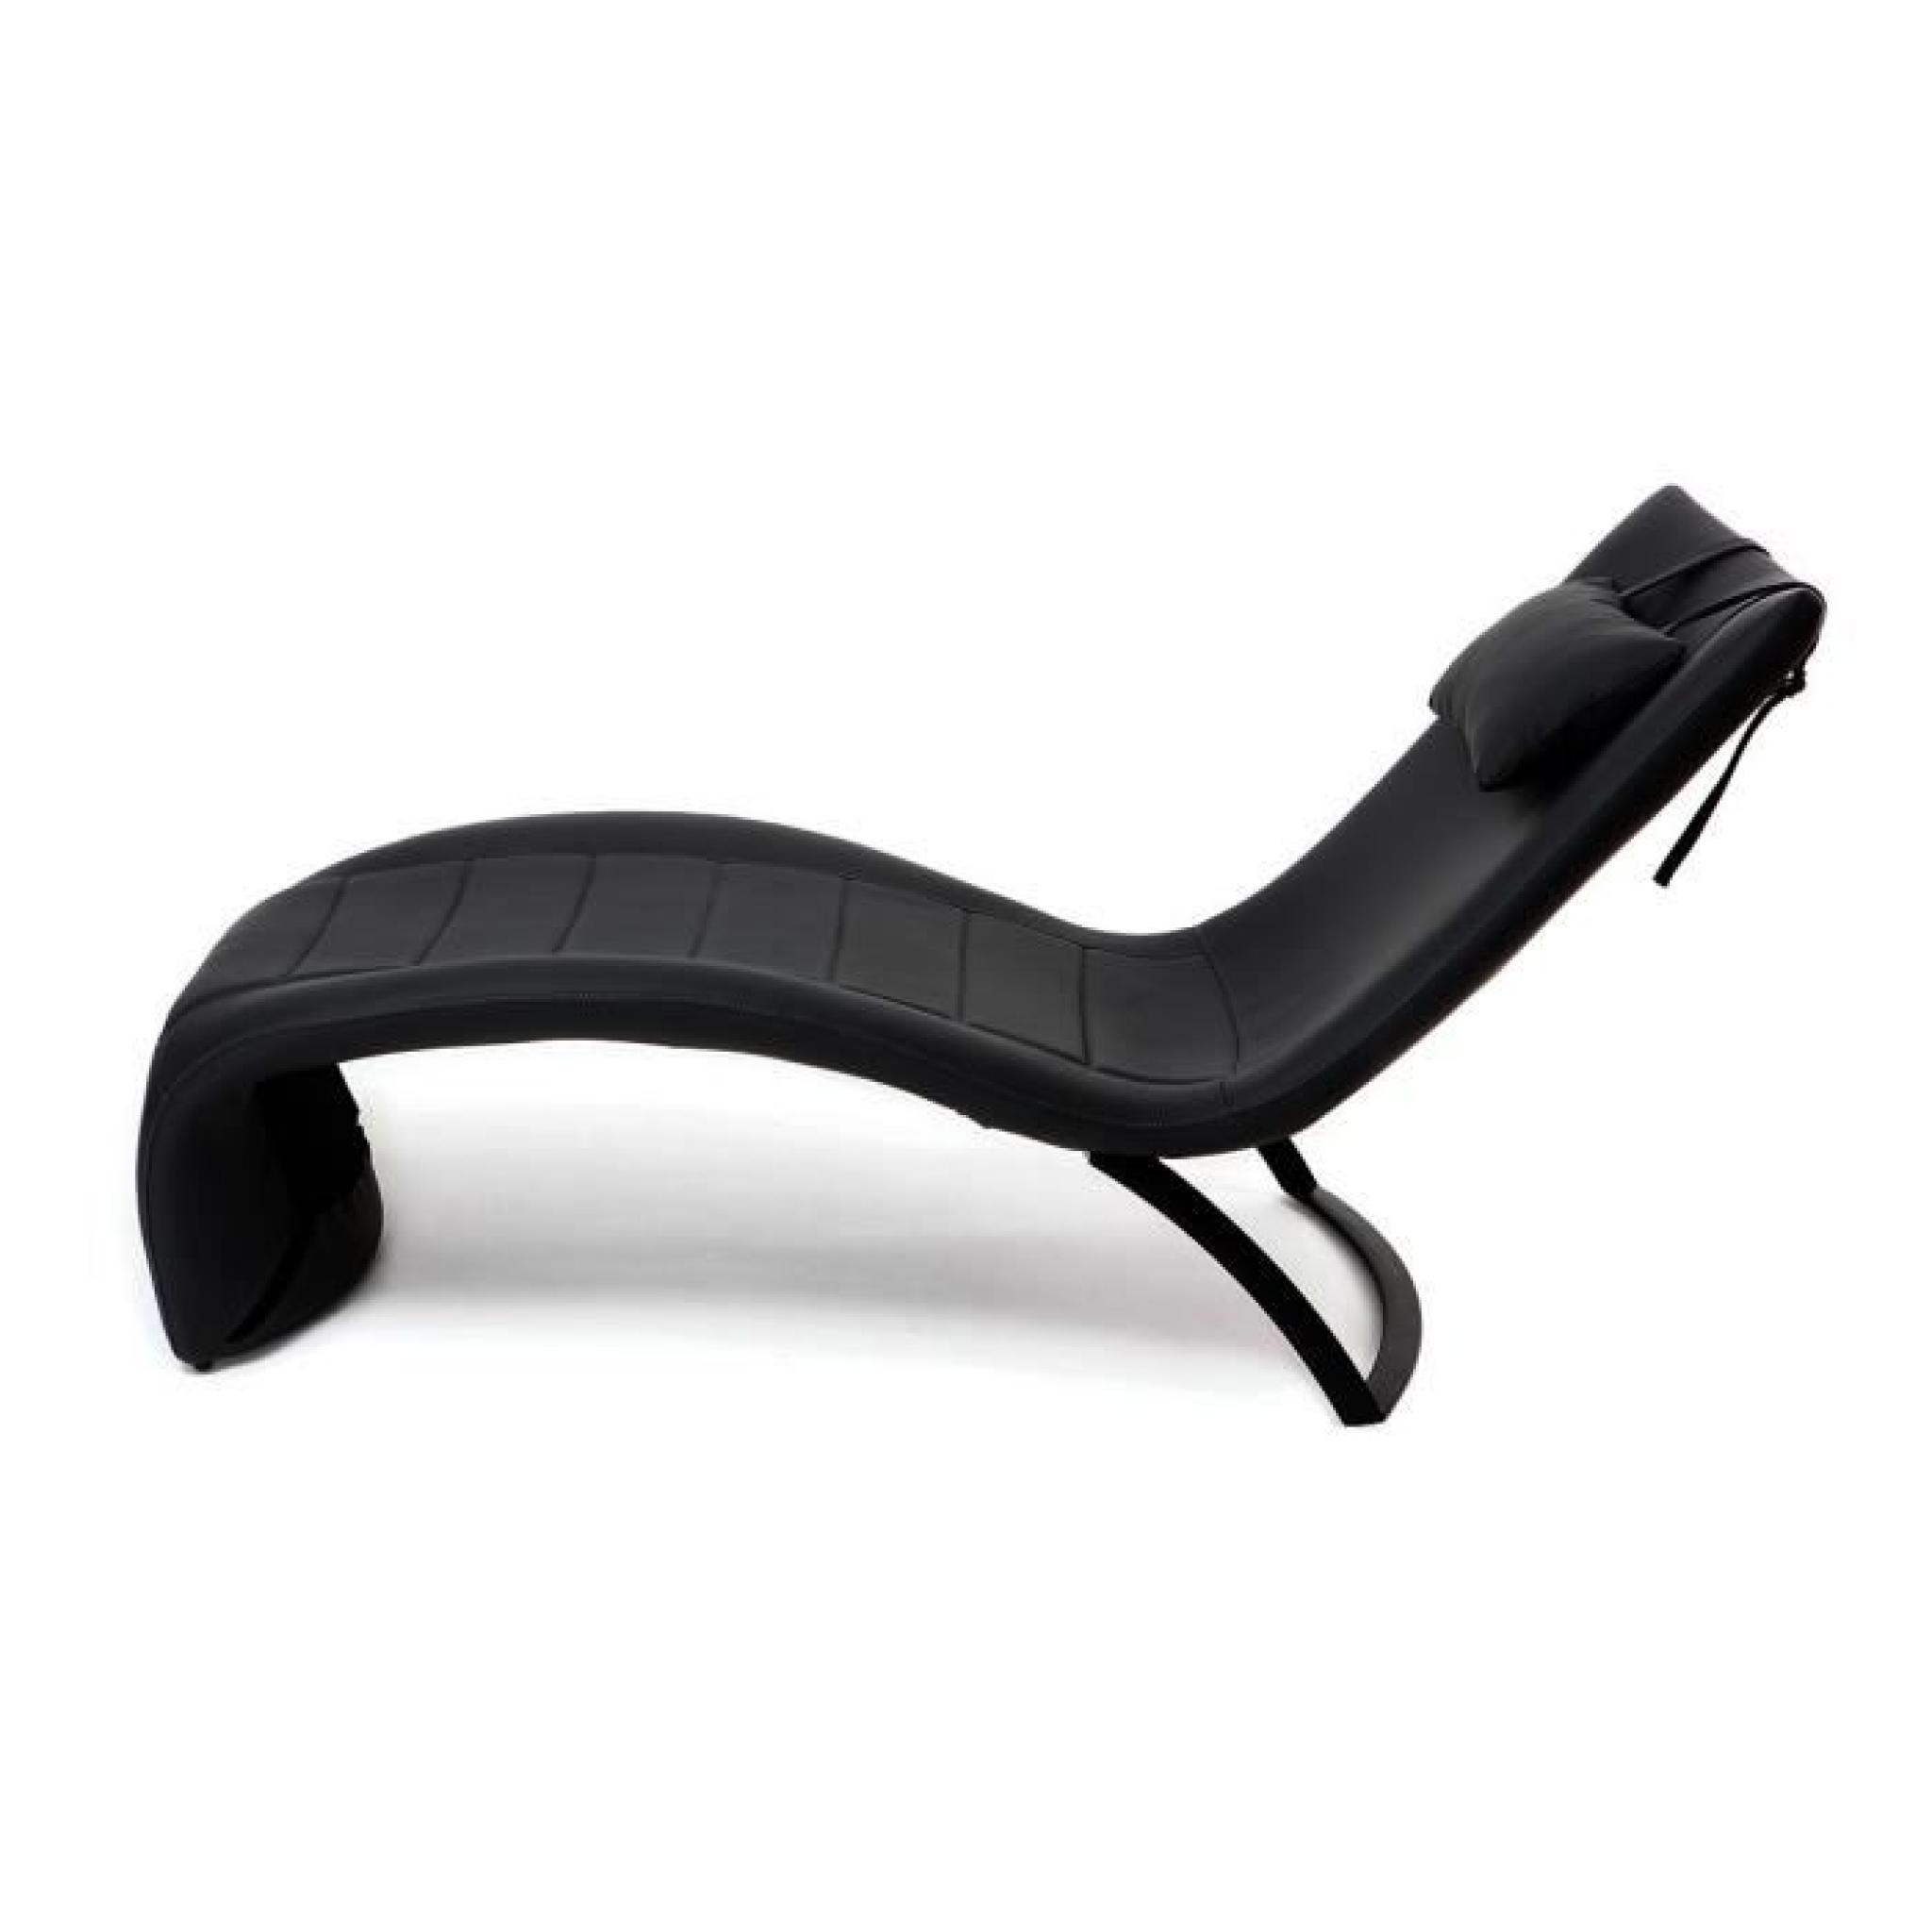 Chaise longue design noir PENSY pas cher